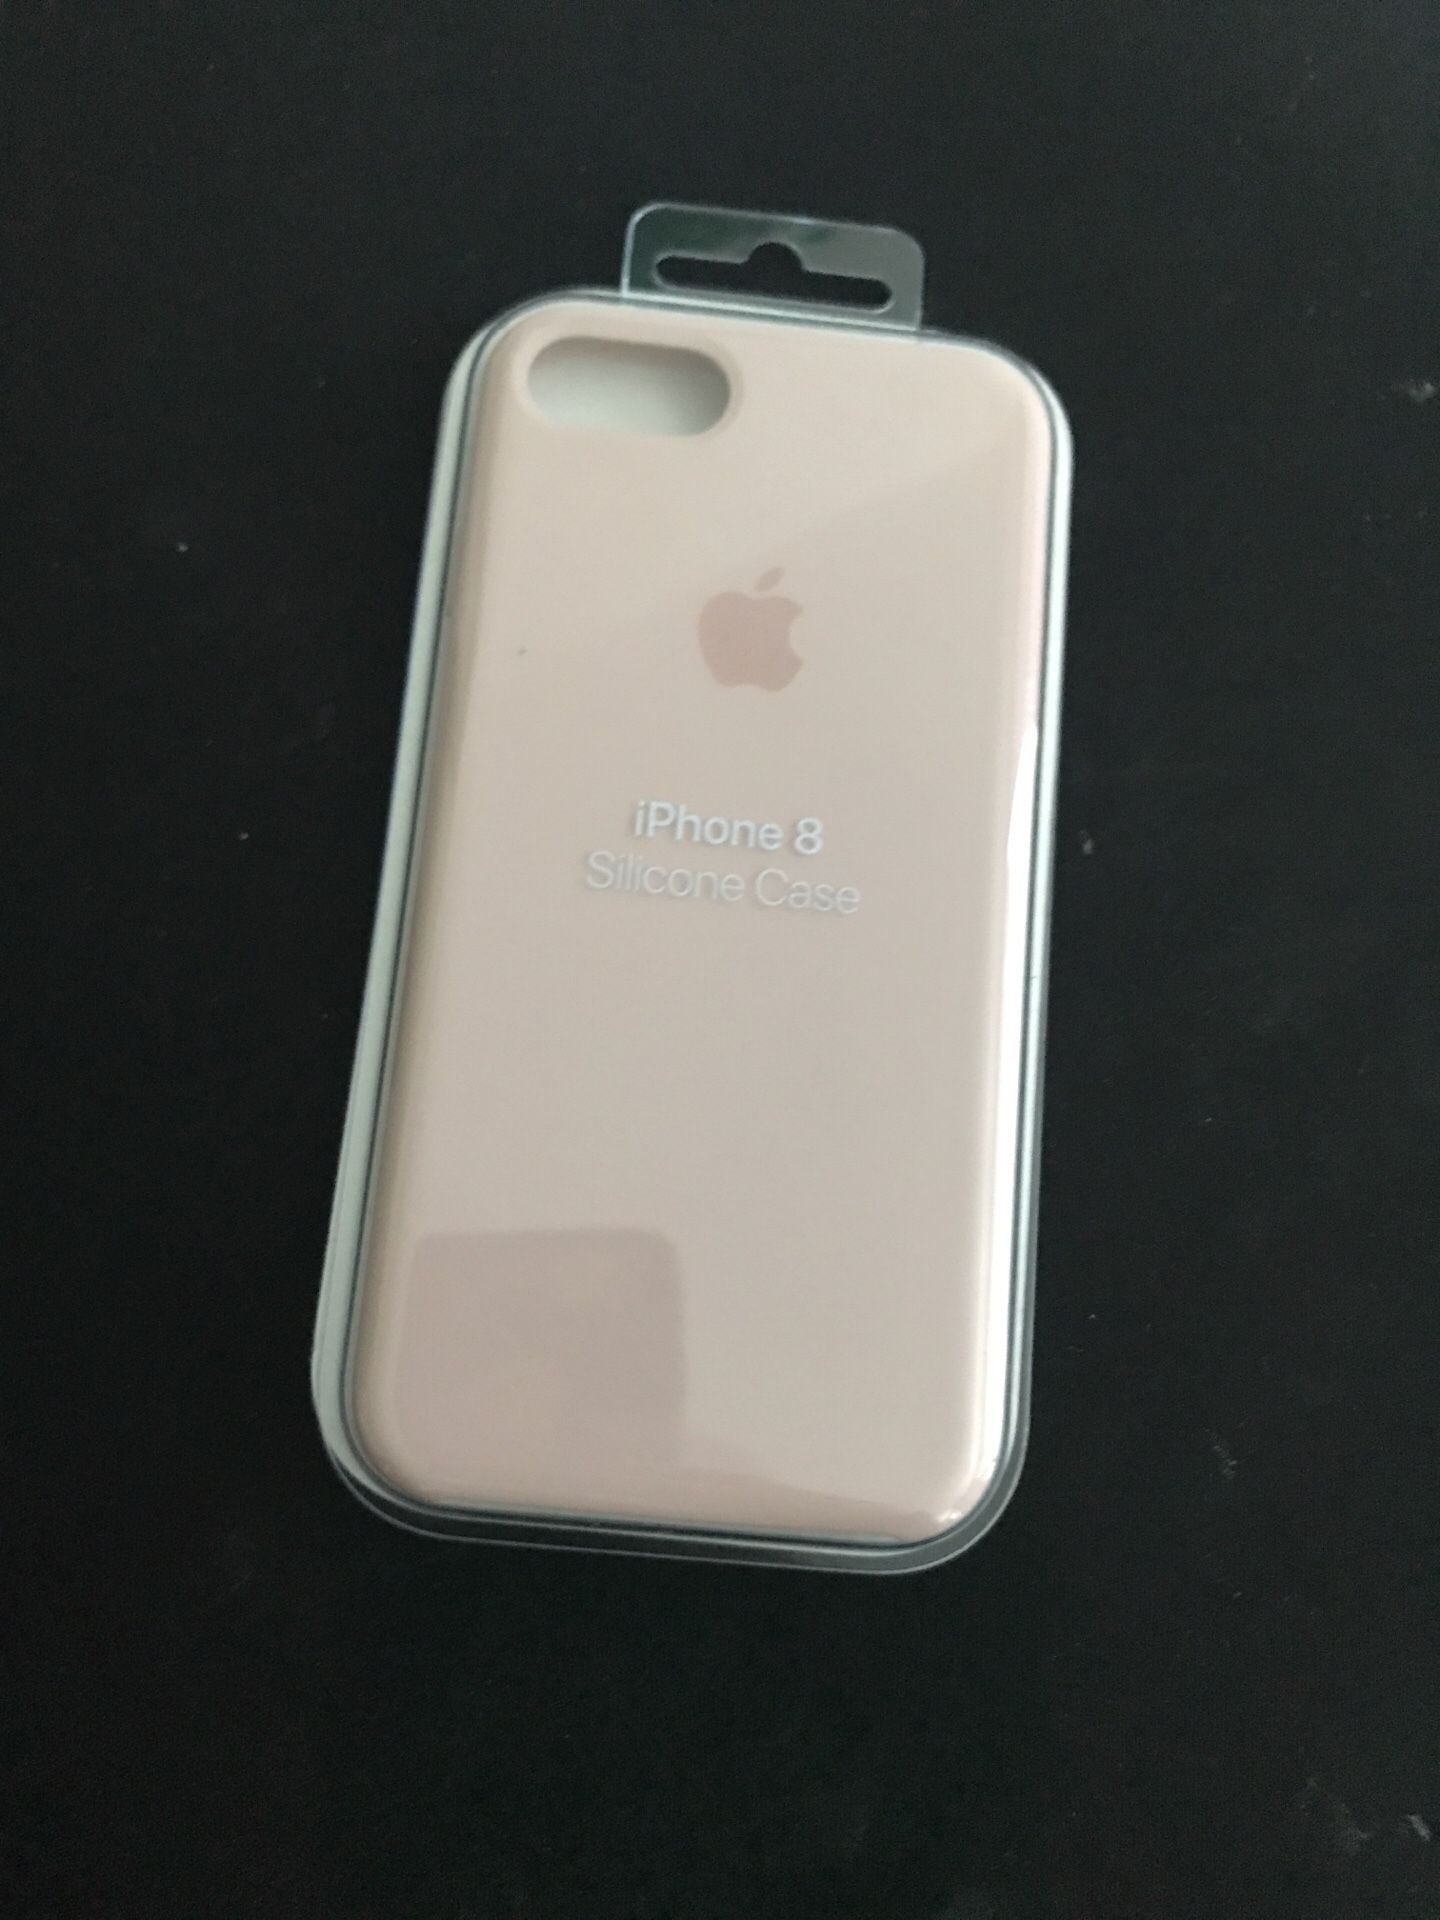 iPhone 7/8 apple silicone case. Retails $60